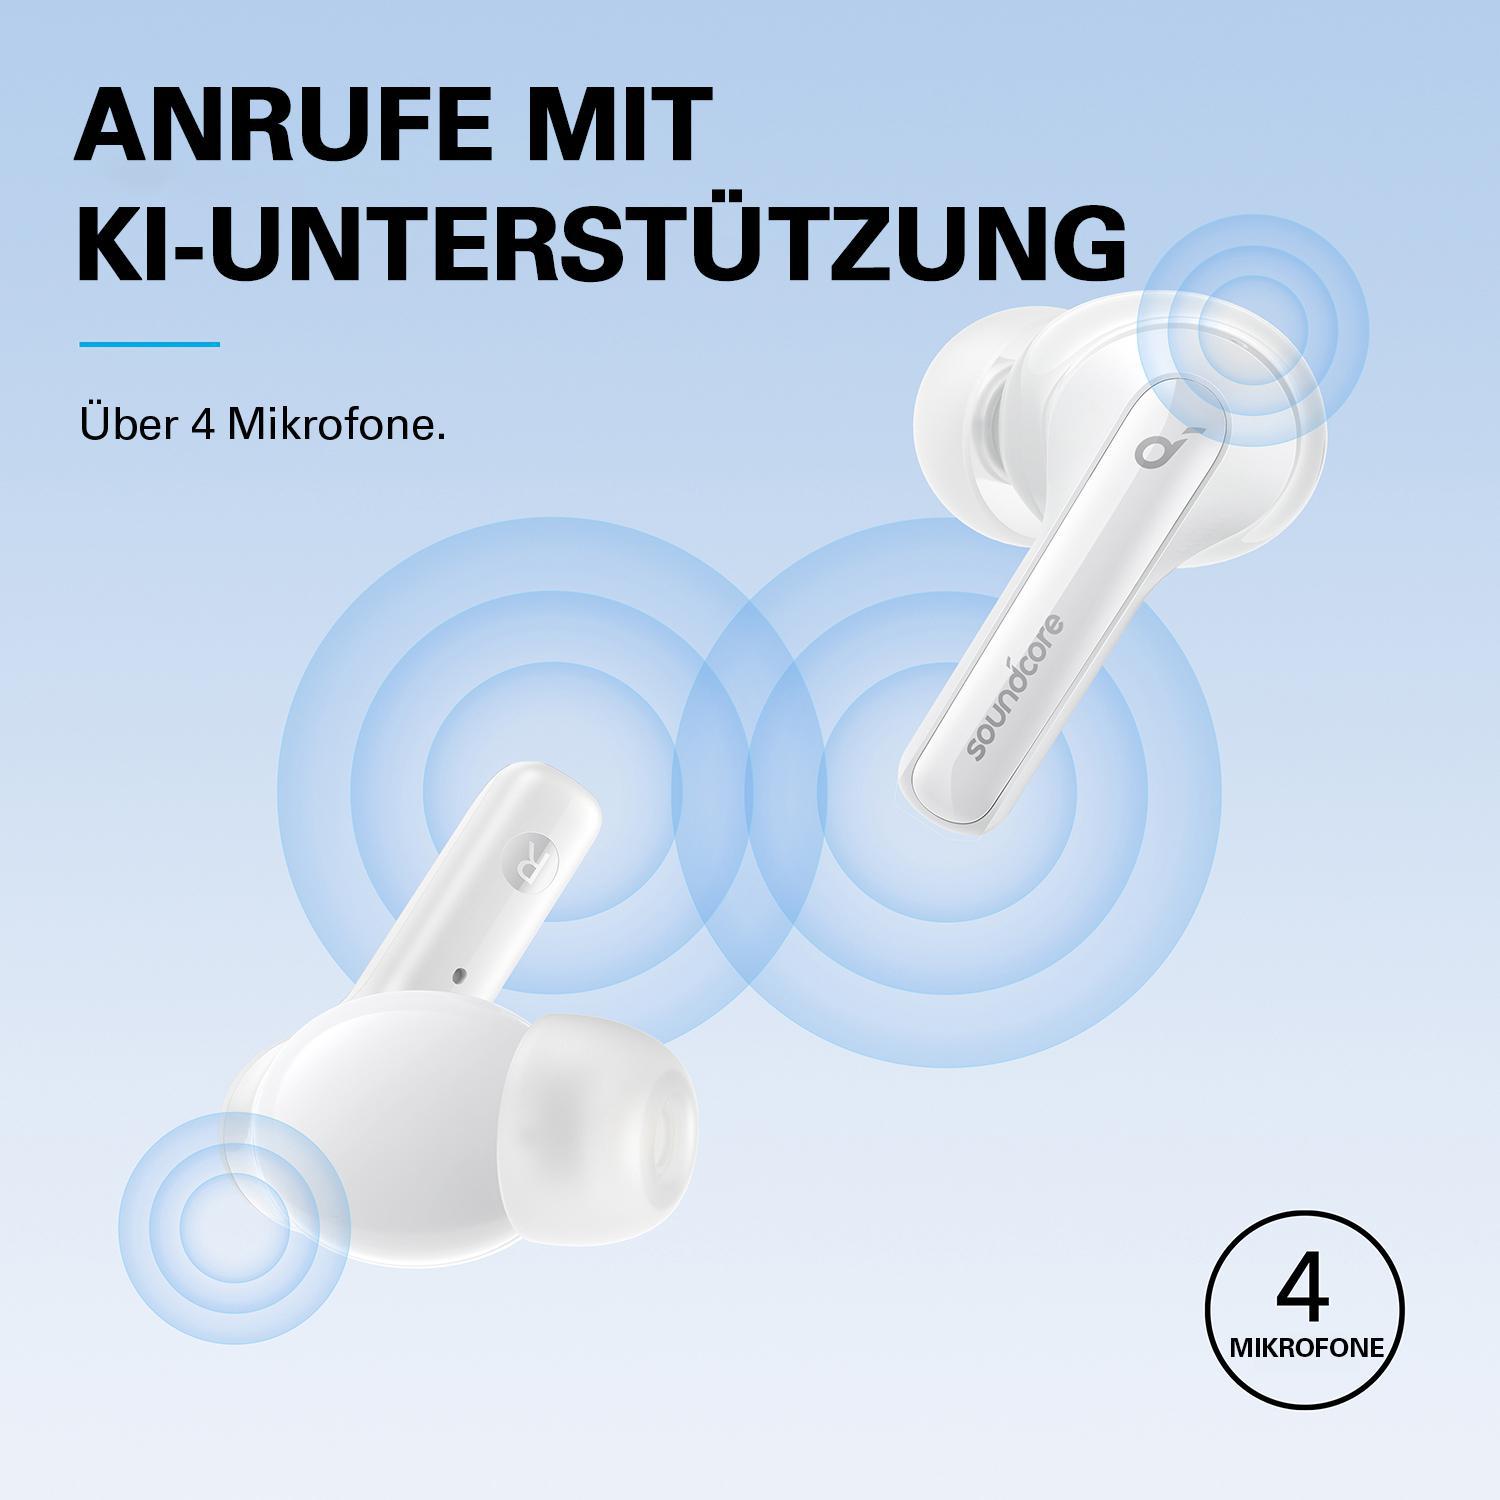 SOUNDCORE BY Life Bluetooth Weiß ANKER 3i, In-ear Kopfhörer Note Soundcore